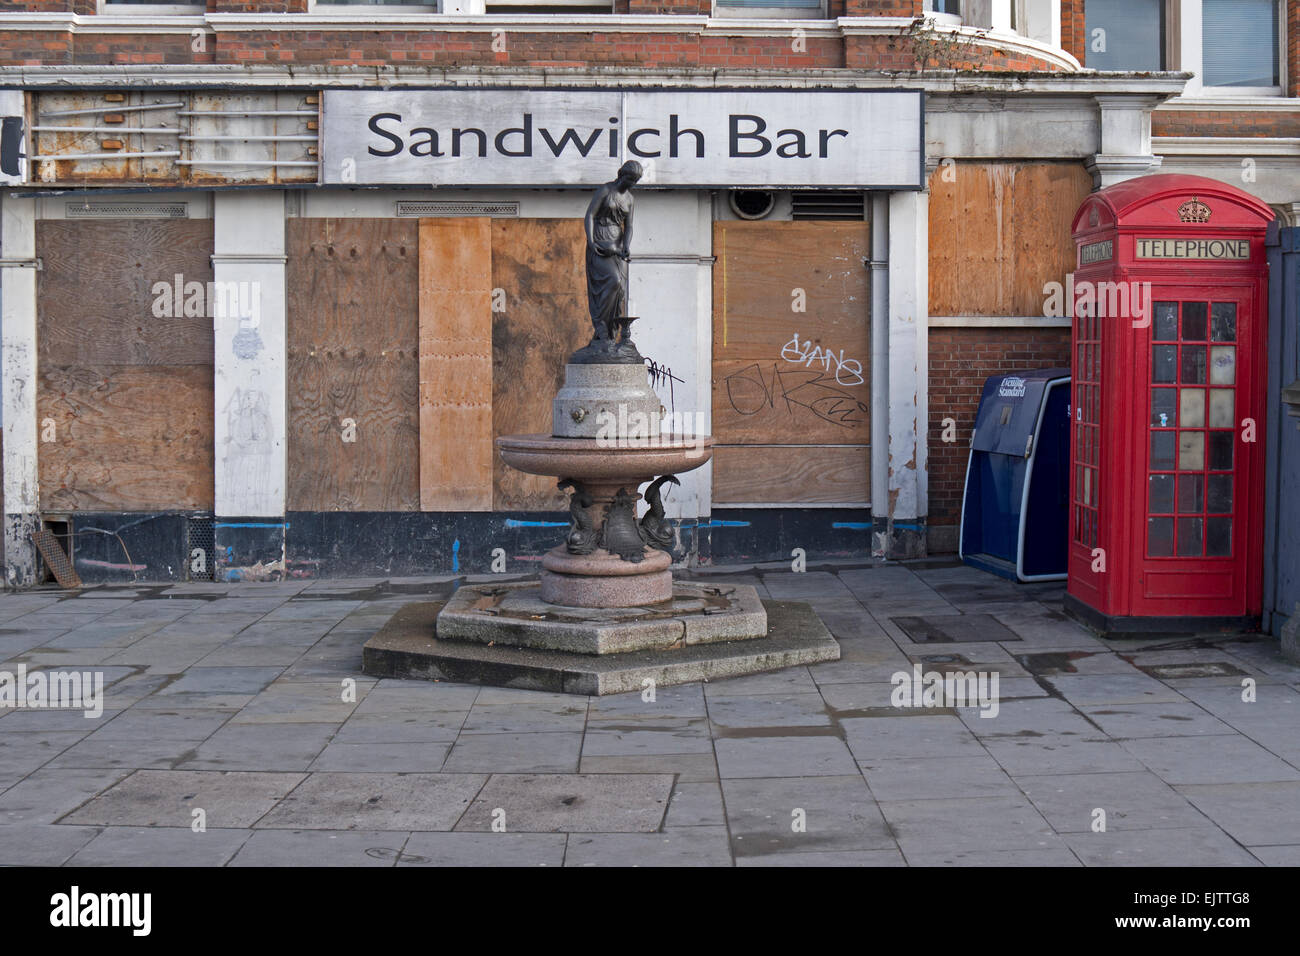 Sandwich bar délabré, fontaine d'eau potable et de téléphone fort à Londres. Banque D'Images